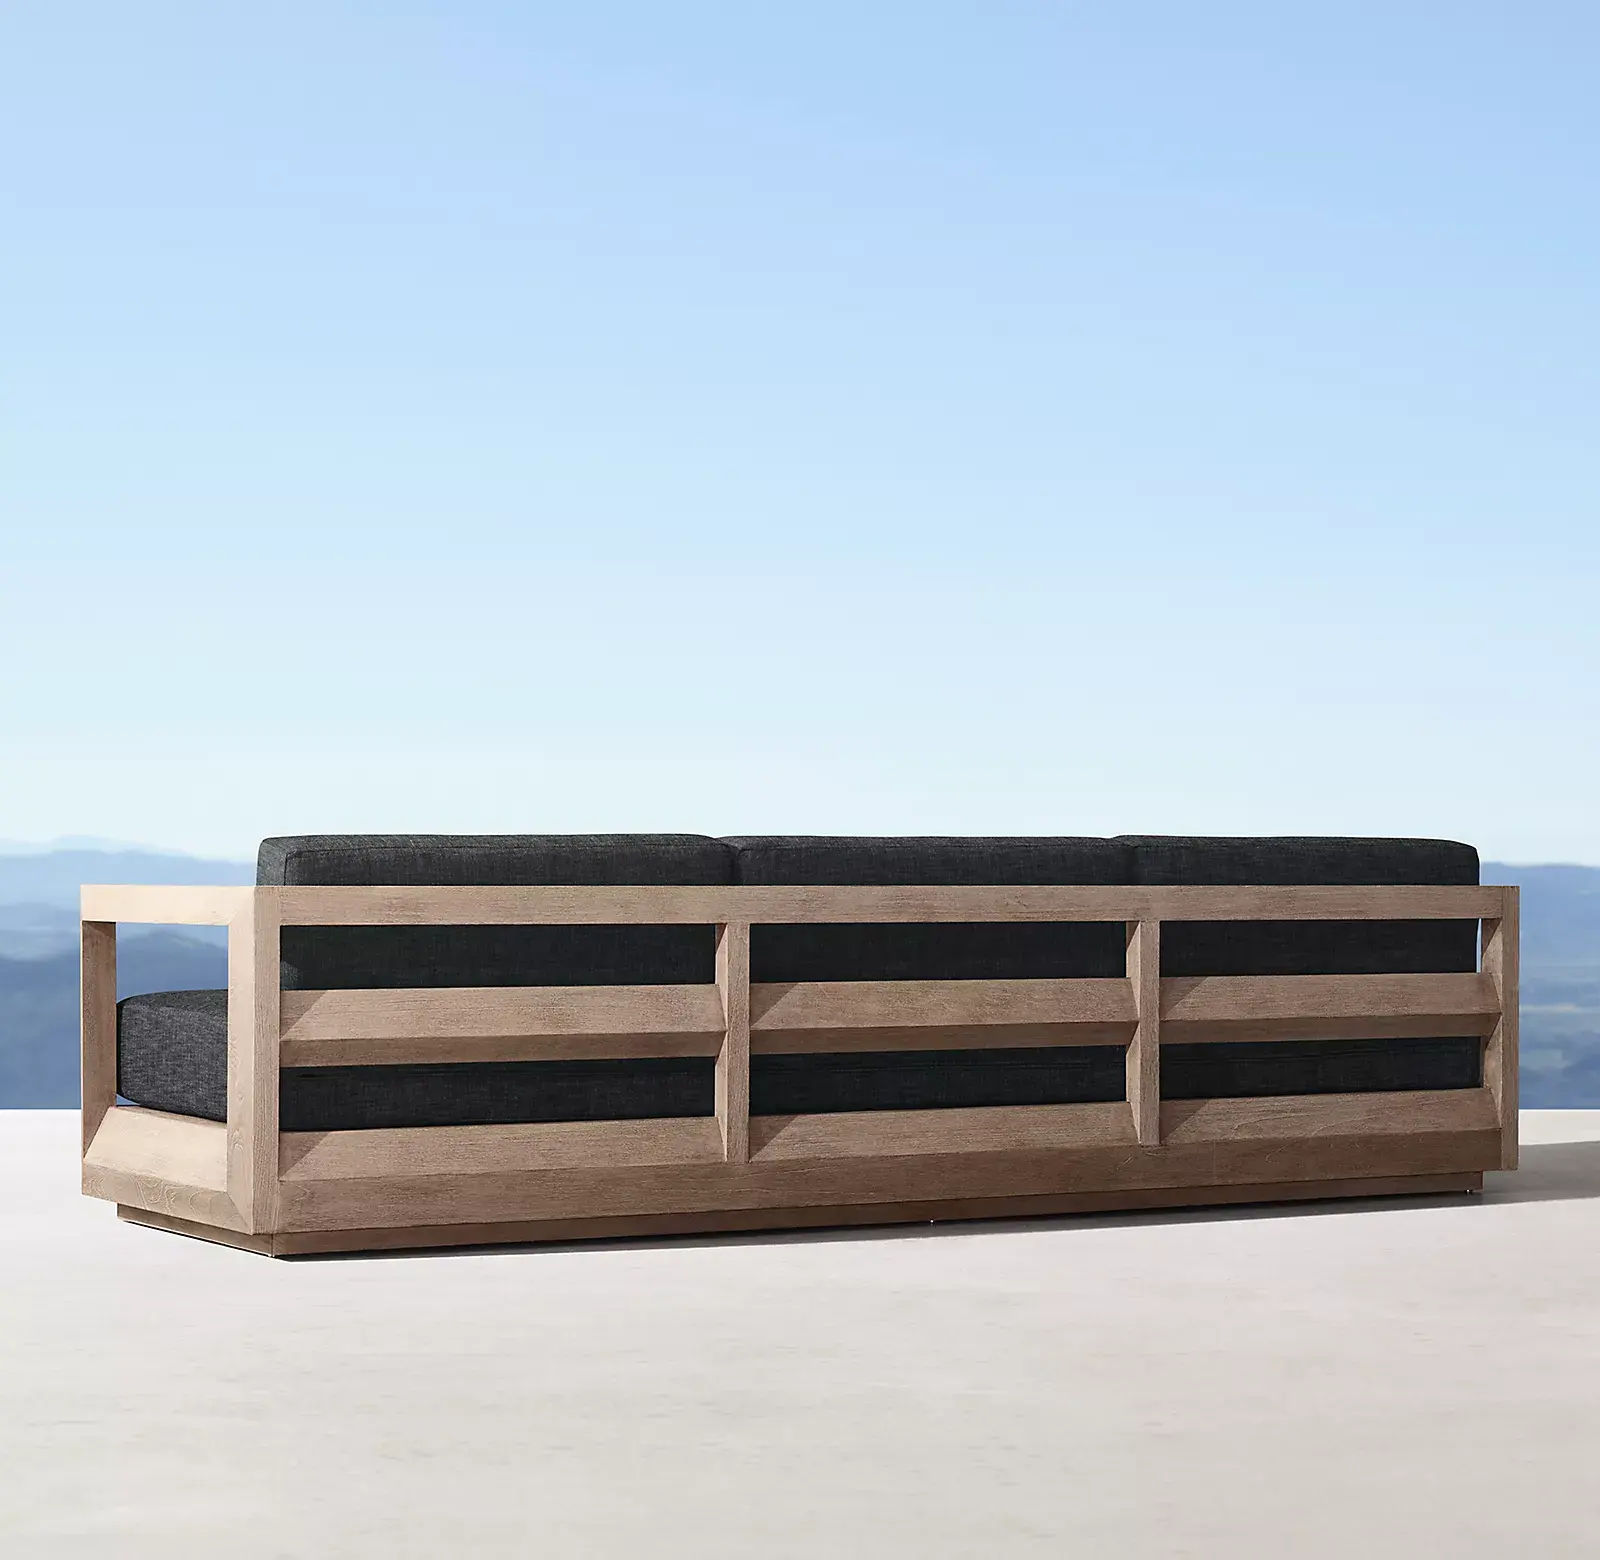 Juego de muebles de exterior de teca para piscina de lujo moderno, juego de sofá de muebles de jardín de madera seccional para Patio